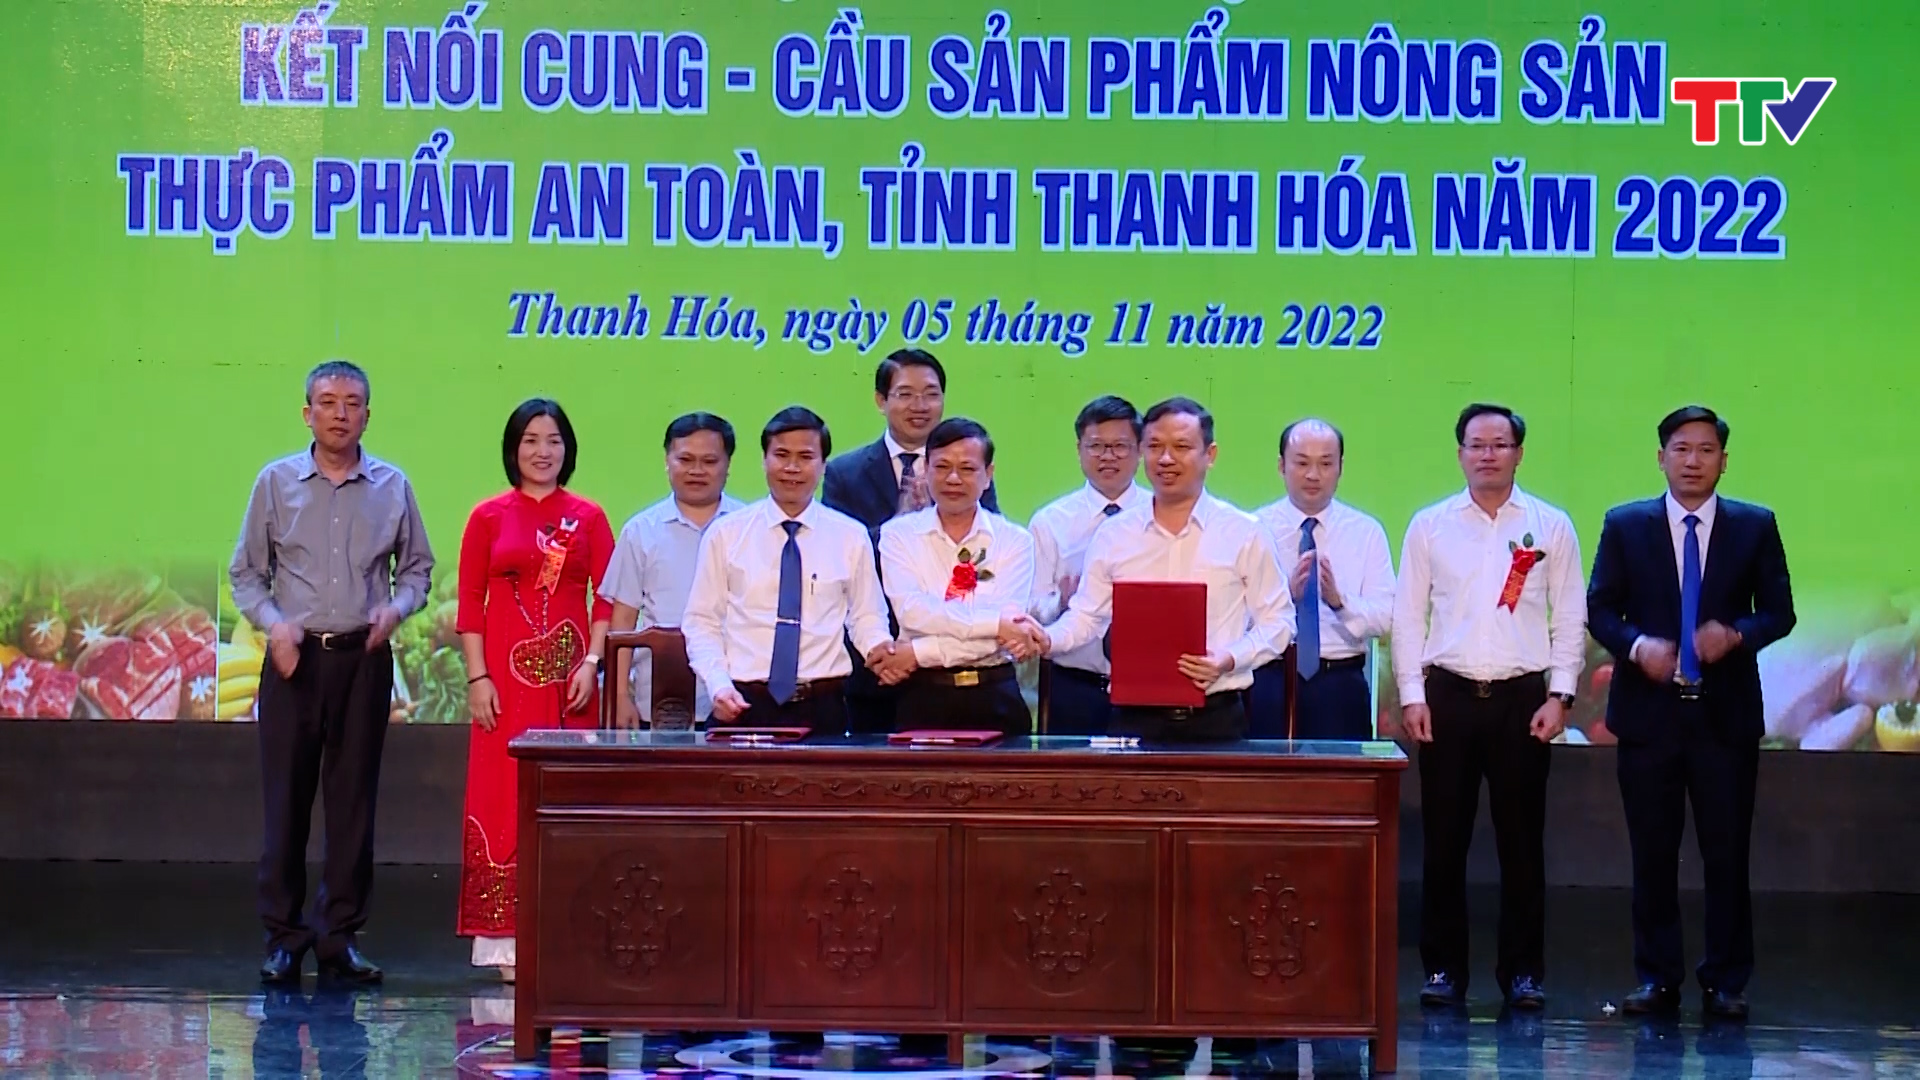 Hội nghị kết nối cung - cầu sản phẩm nông sản, thực phẩm an toàn tỉnh Thanh Hóa - Ảnh 3.